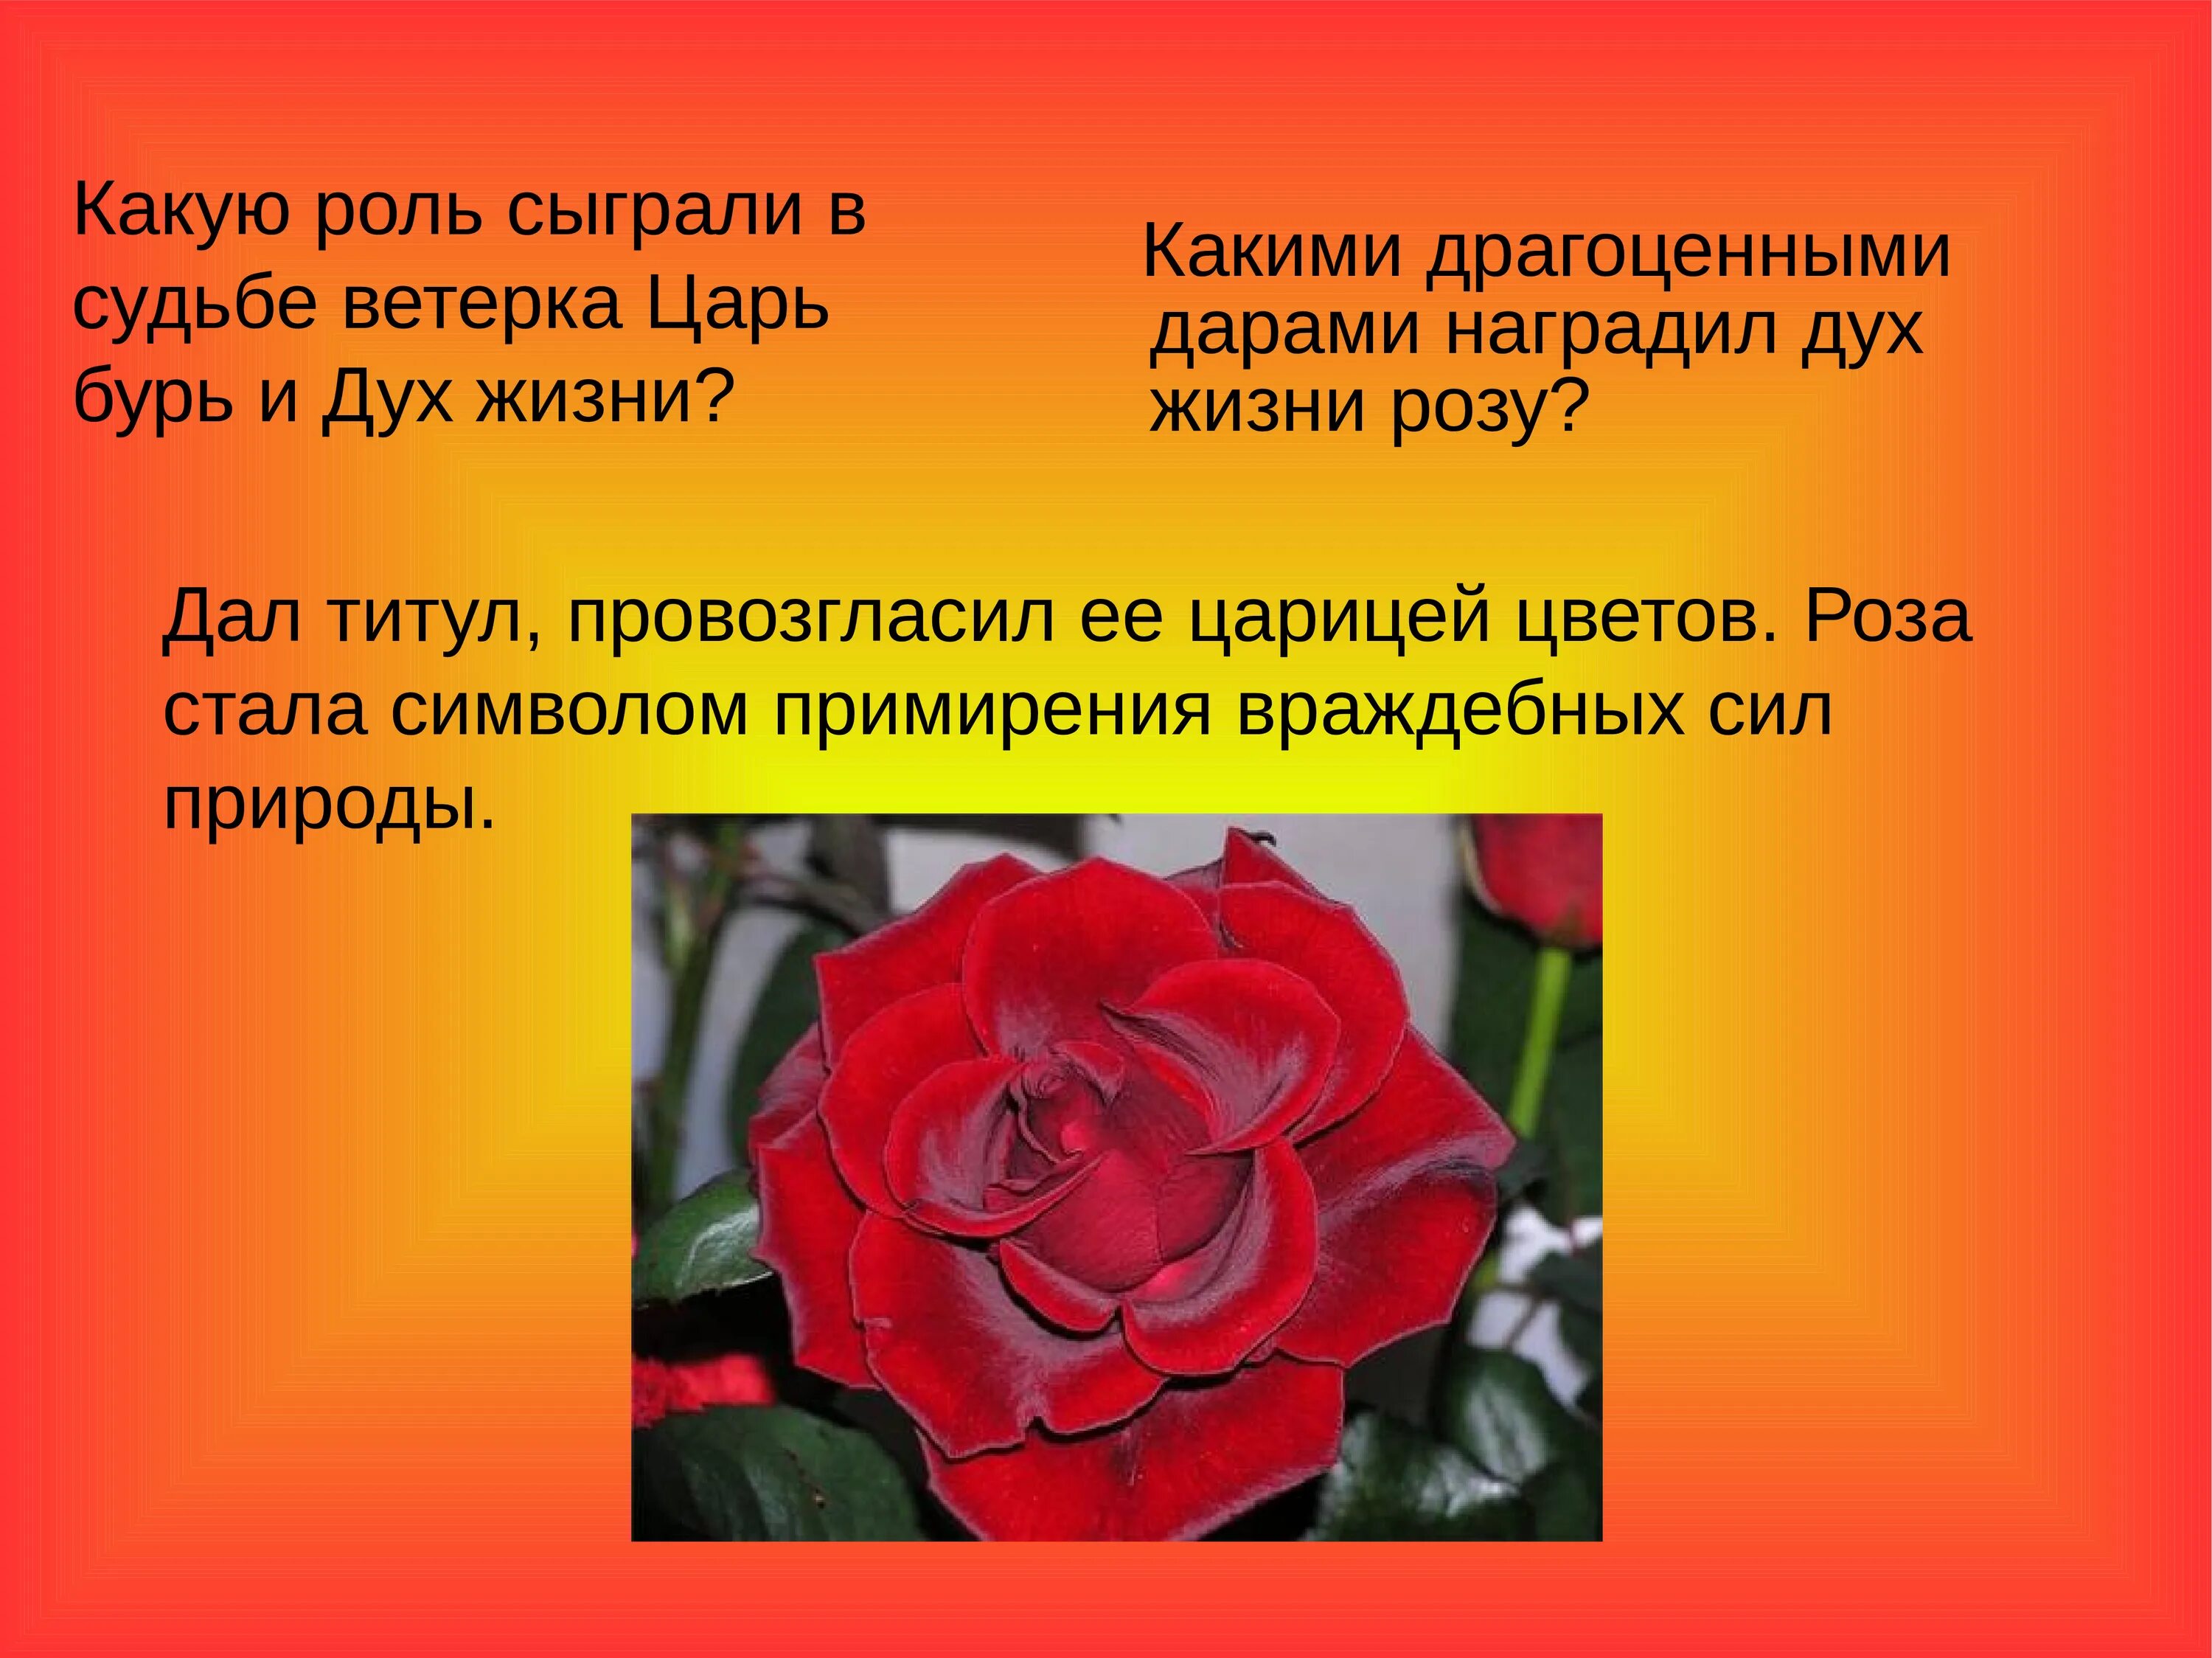 Цветок на земле вопросы по содержанию произведения. Описание цветка розы. Рассказ о чём говорят цветы.